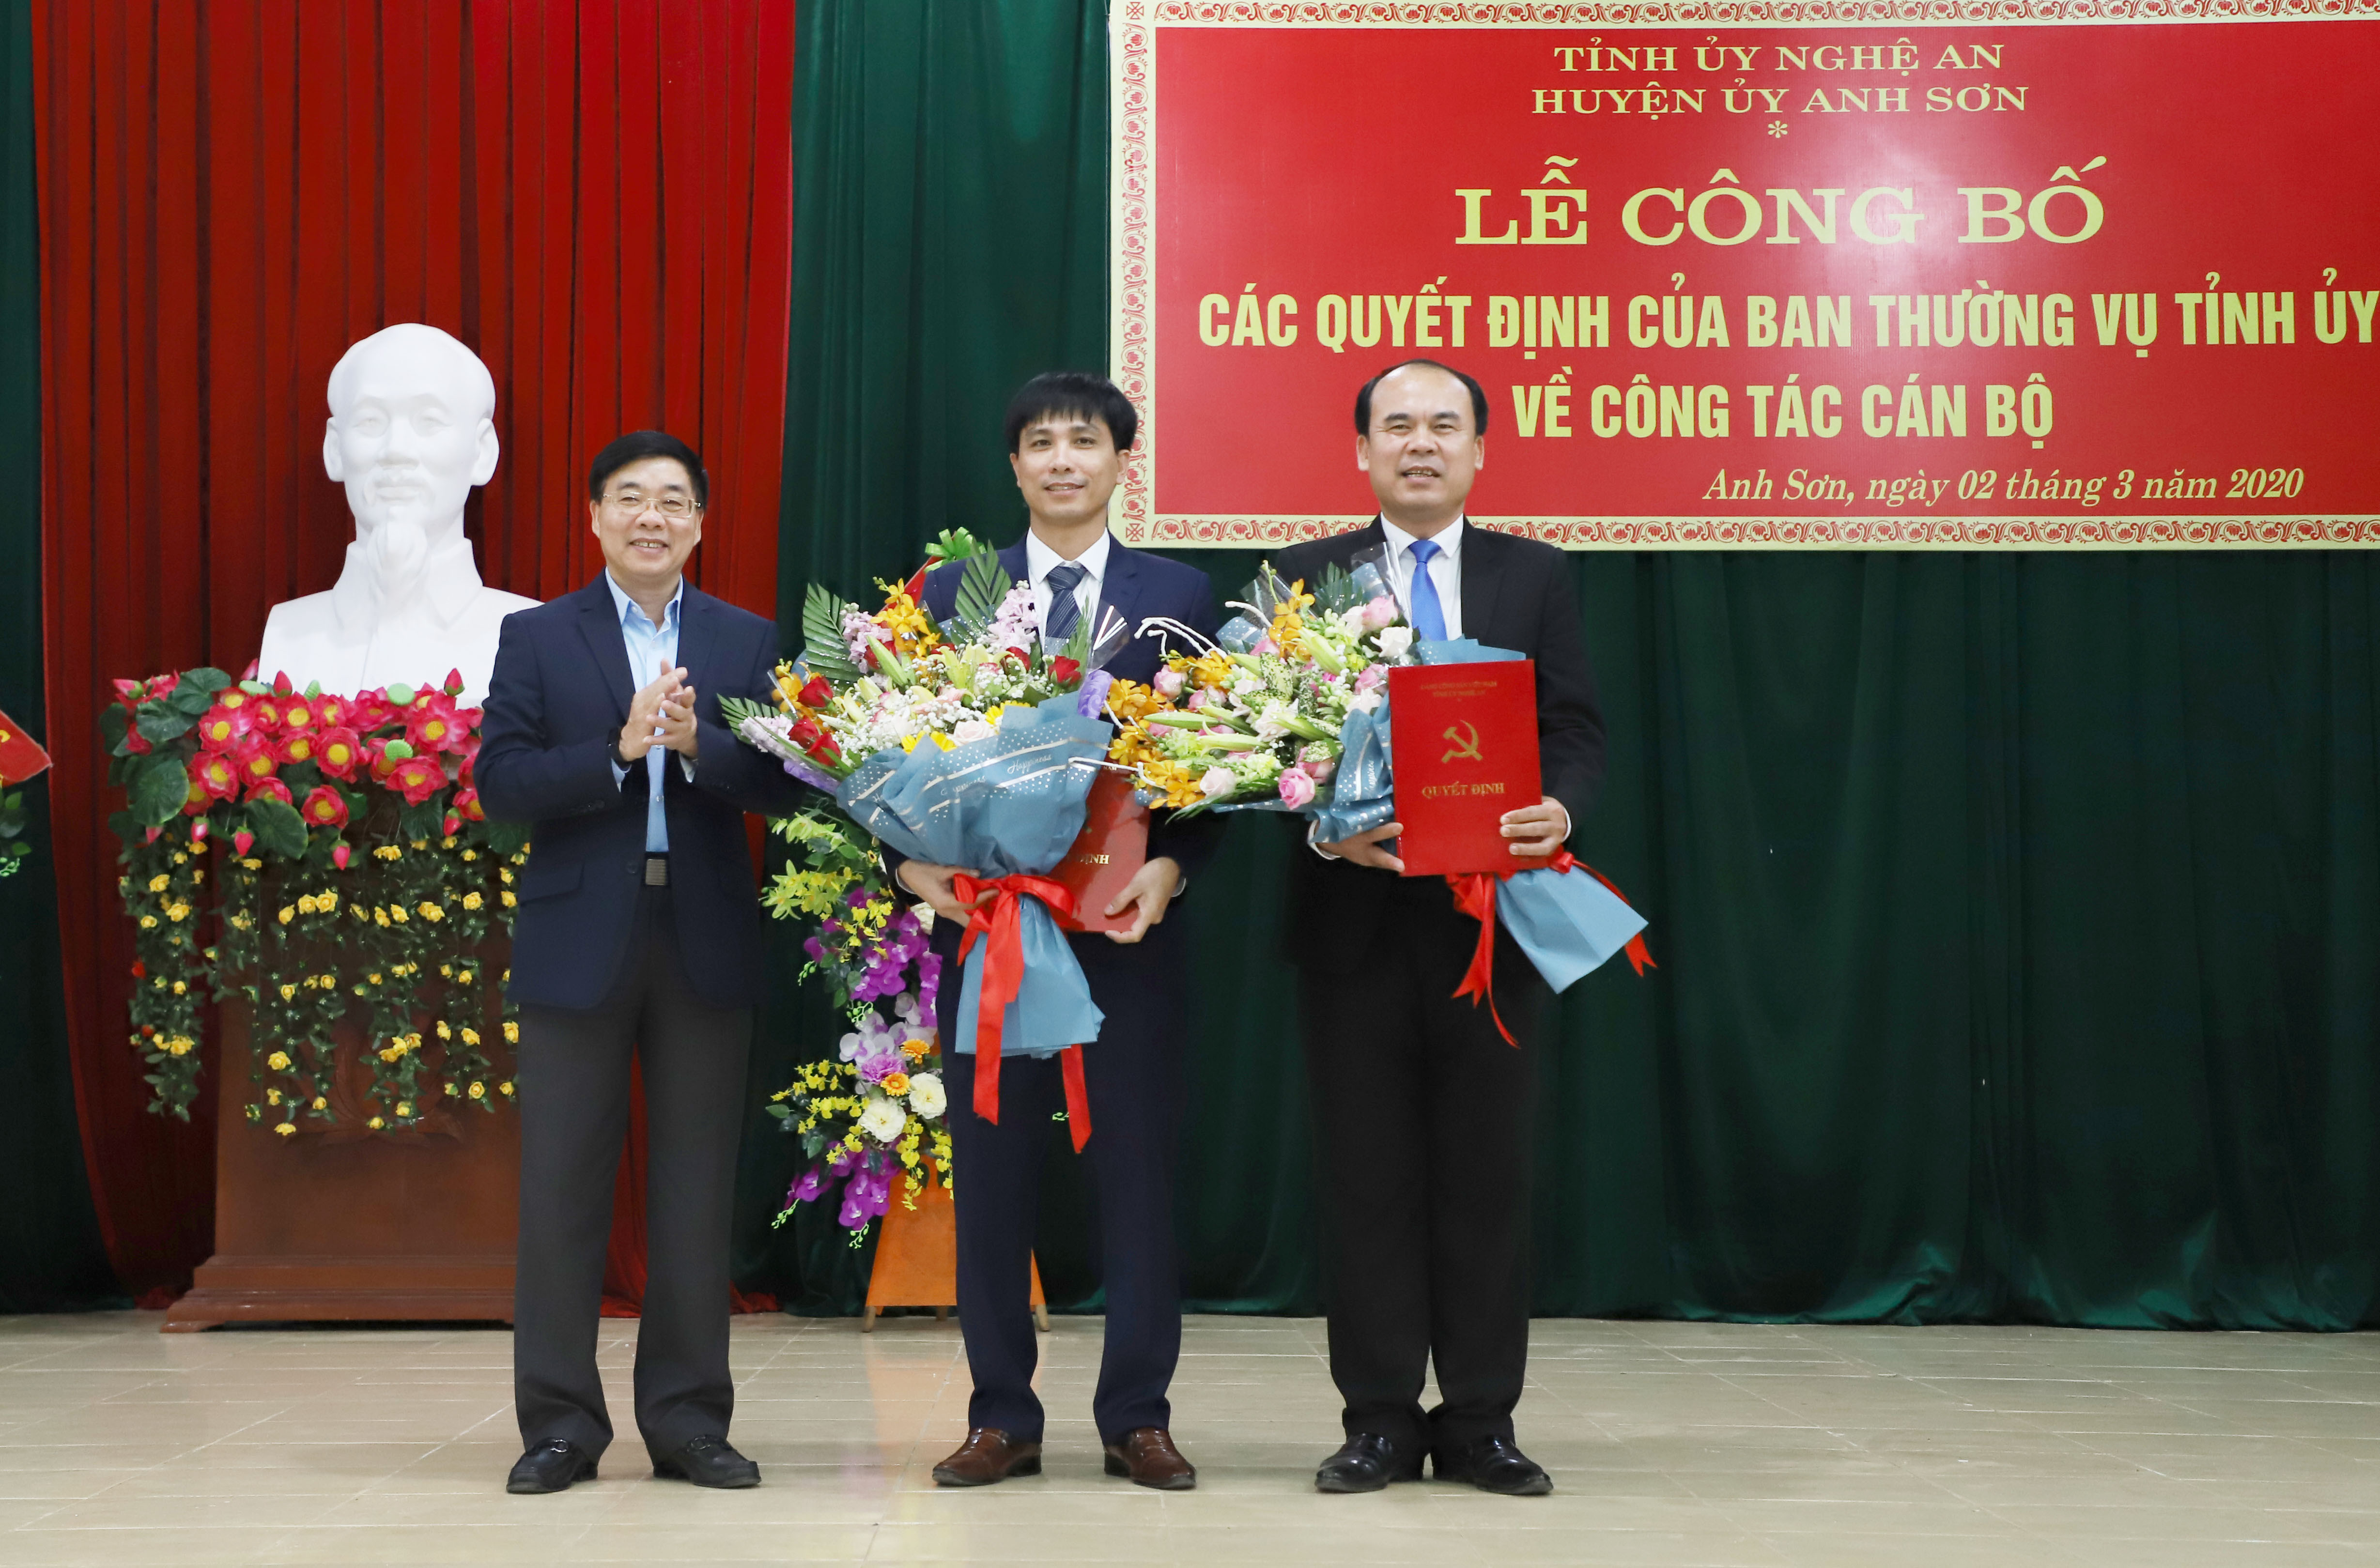 Phó Bí thư Tỉnh ủy Nguyễn Văn Thông trao quyết định cho 2 đồng chí Đặng Xuân Quang và Hoàng Quyền.